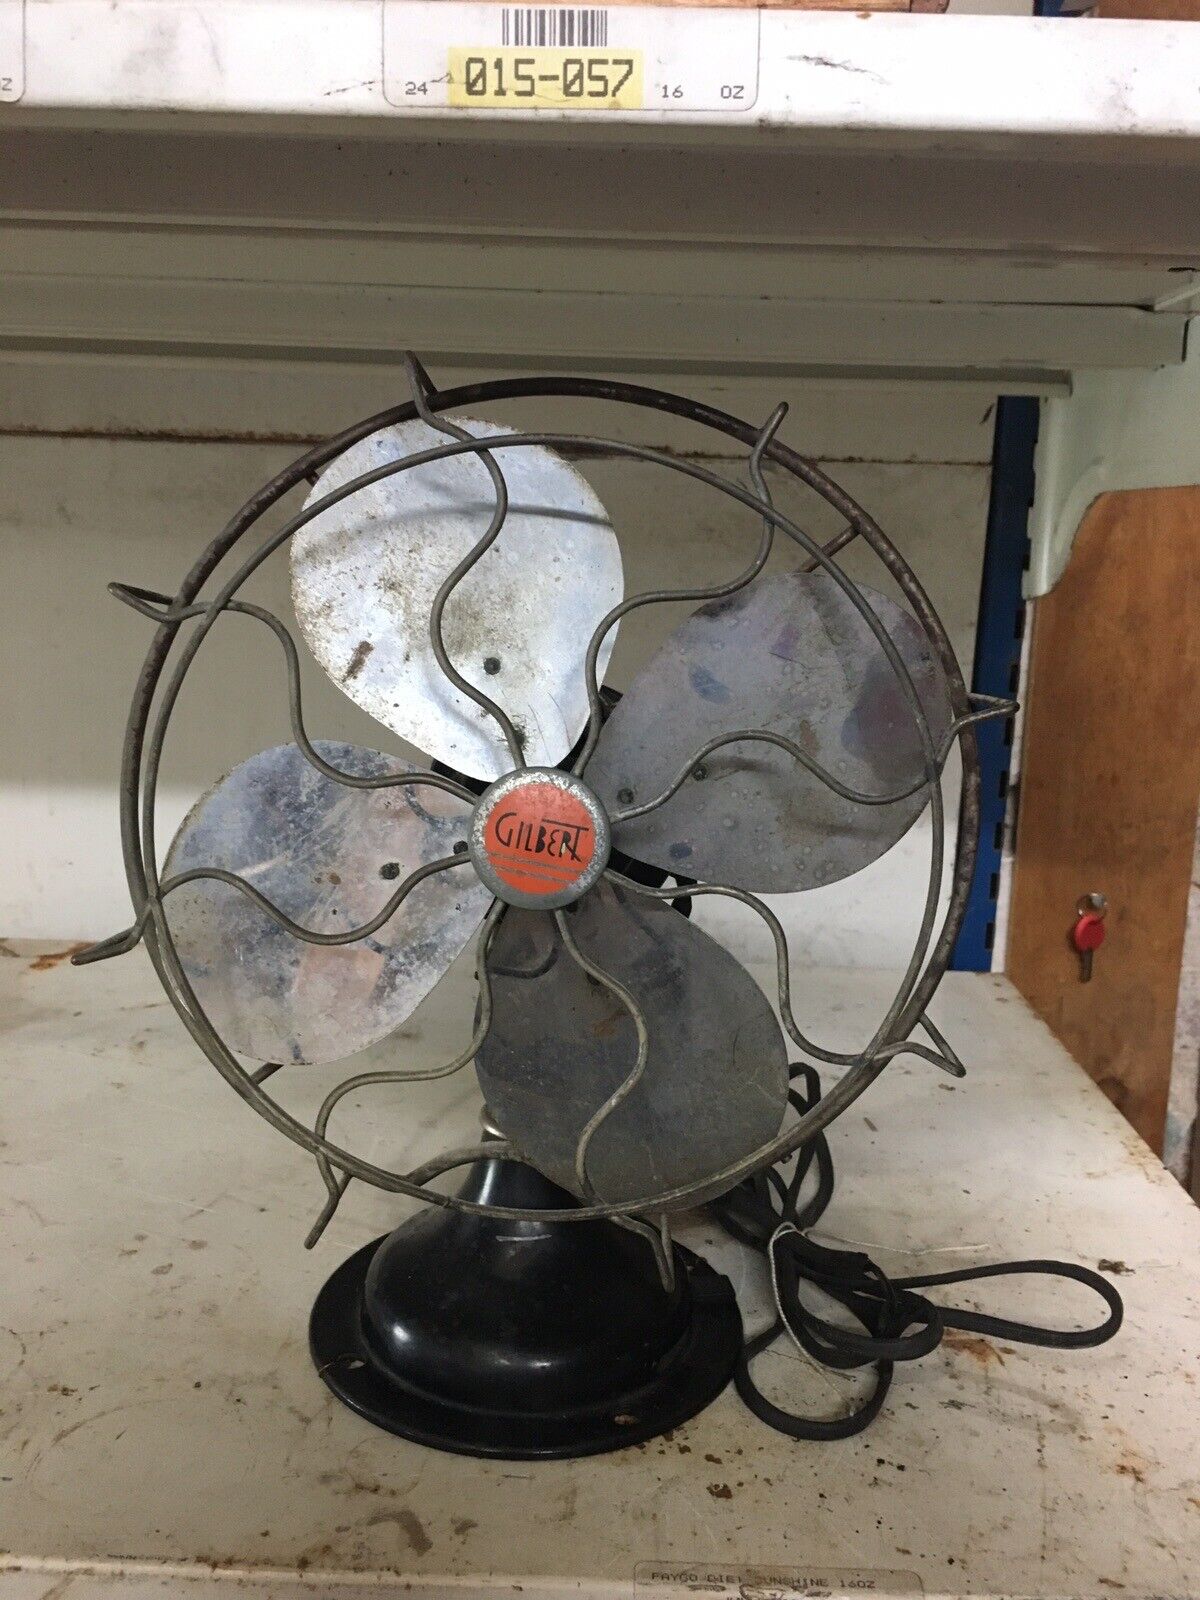 Antique Gilbert Oscillating Fan